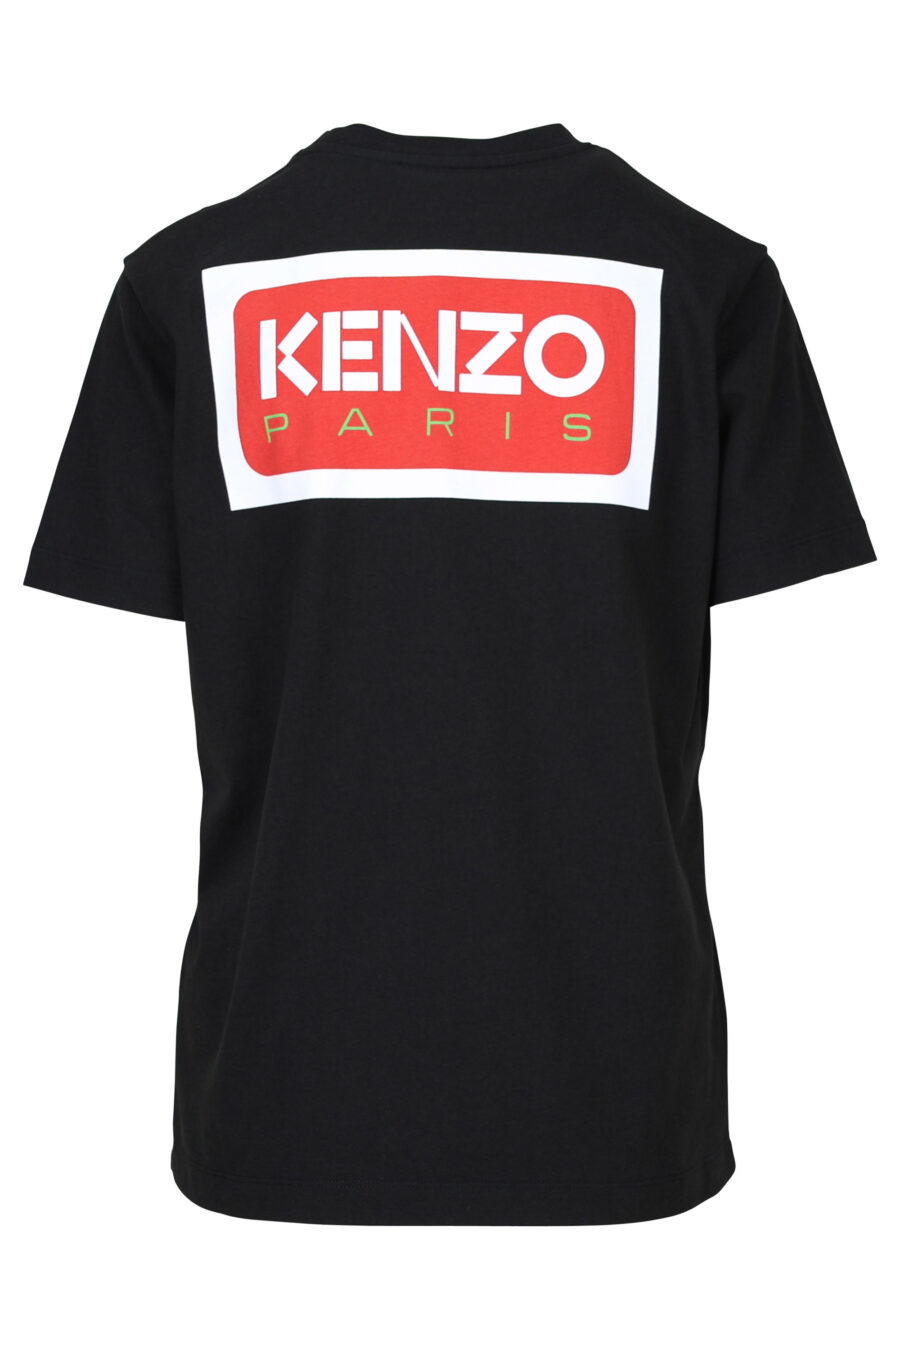 T-shirt preta de tamanho grande com o logótipo "kenzo paris" - 3612230520769 1